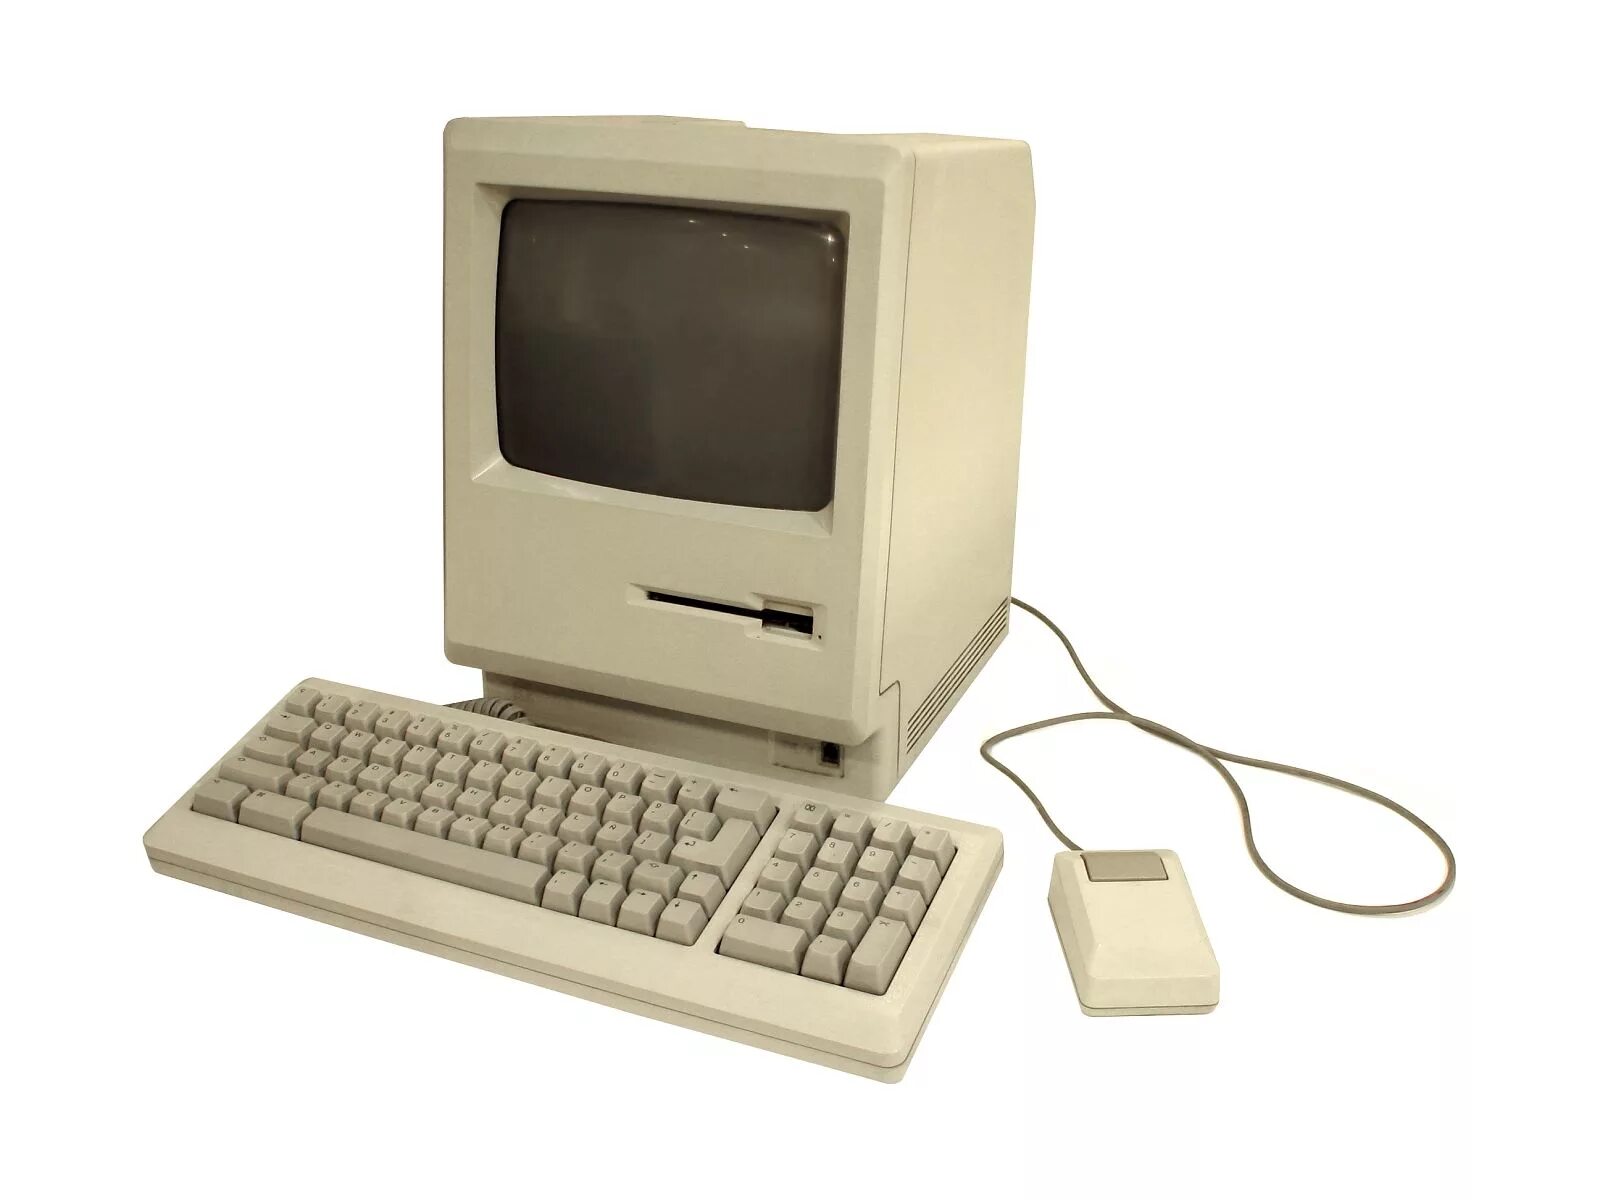 Old computer. Слабый компьютер. Персональный компьютер старый. Стар слаб комп. Старый маленький компьютер.